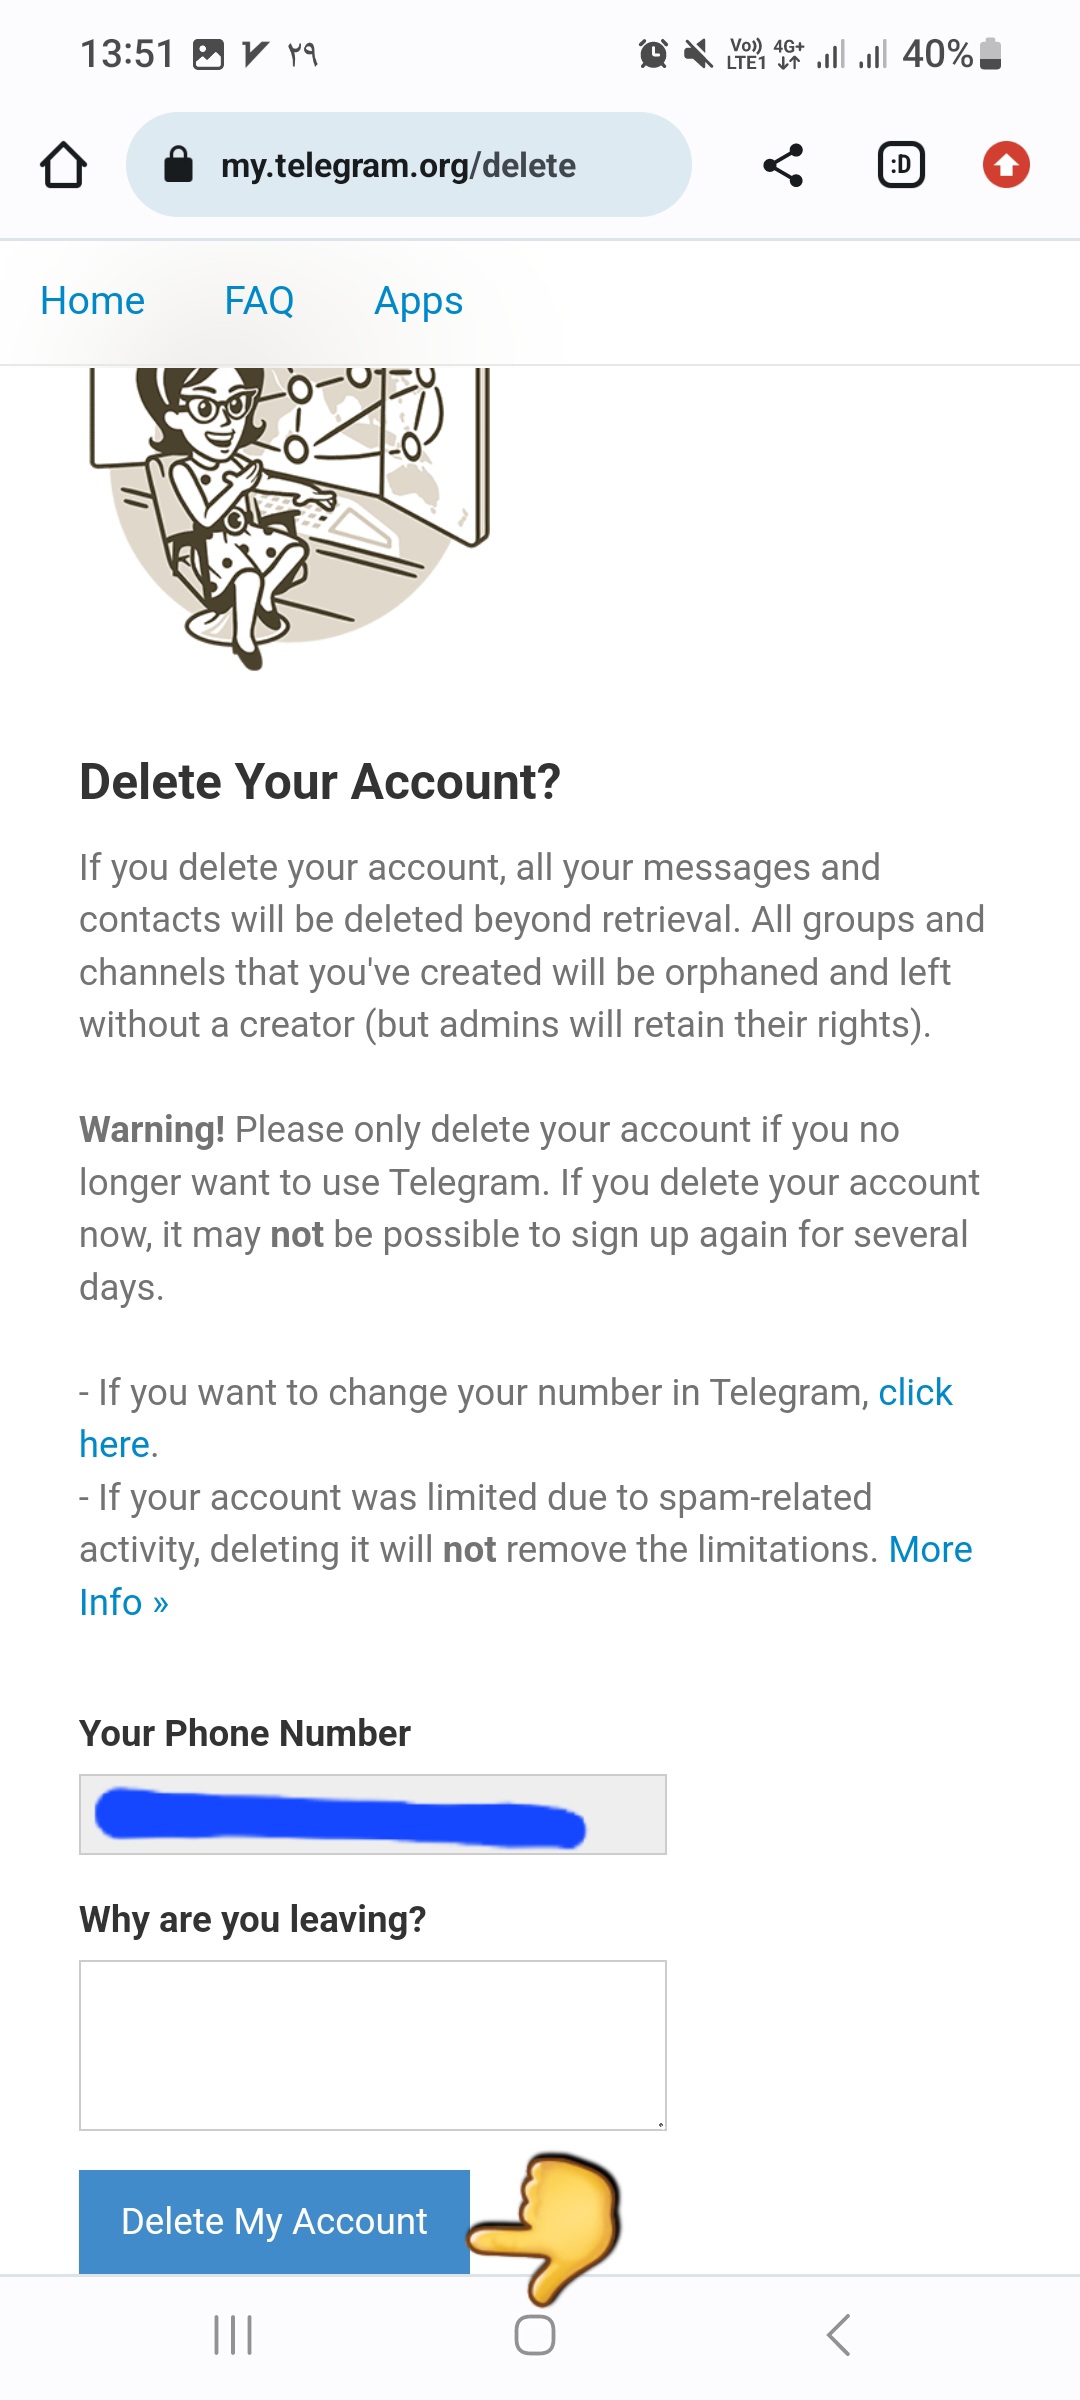 لینک دیلیت اکانت تلگرام روش وبسایت مرحله چهارم